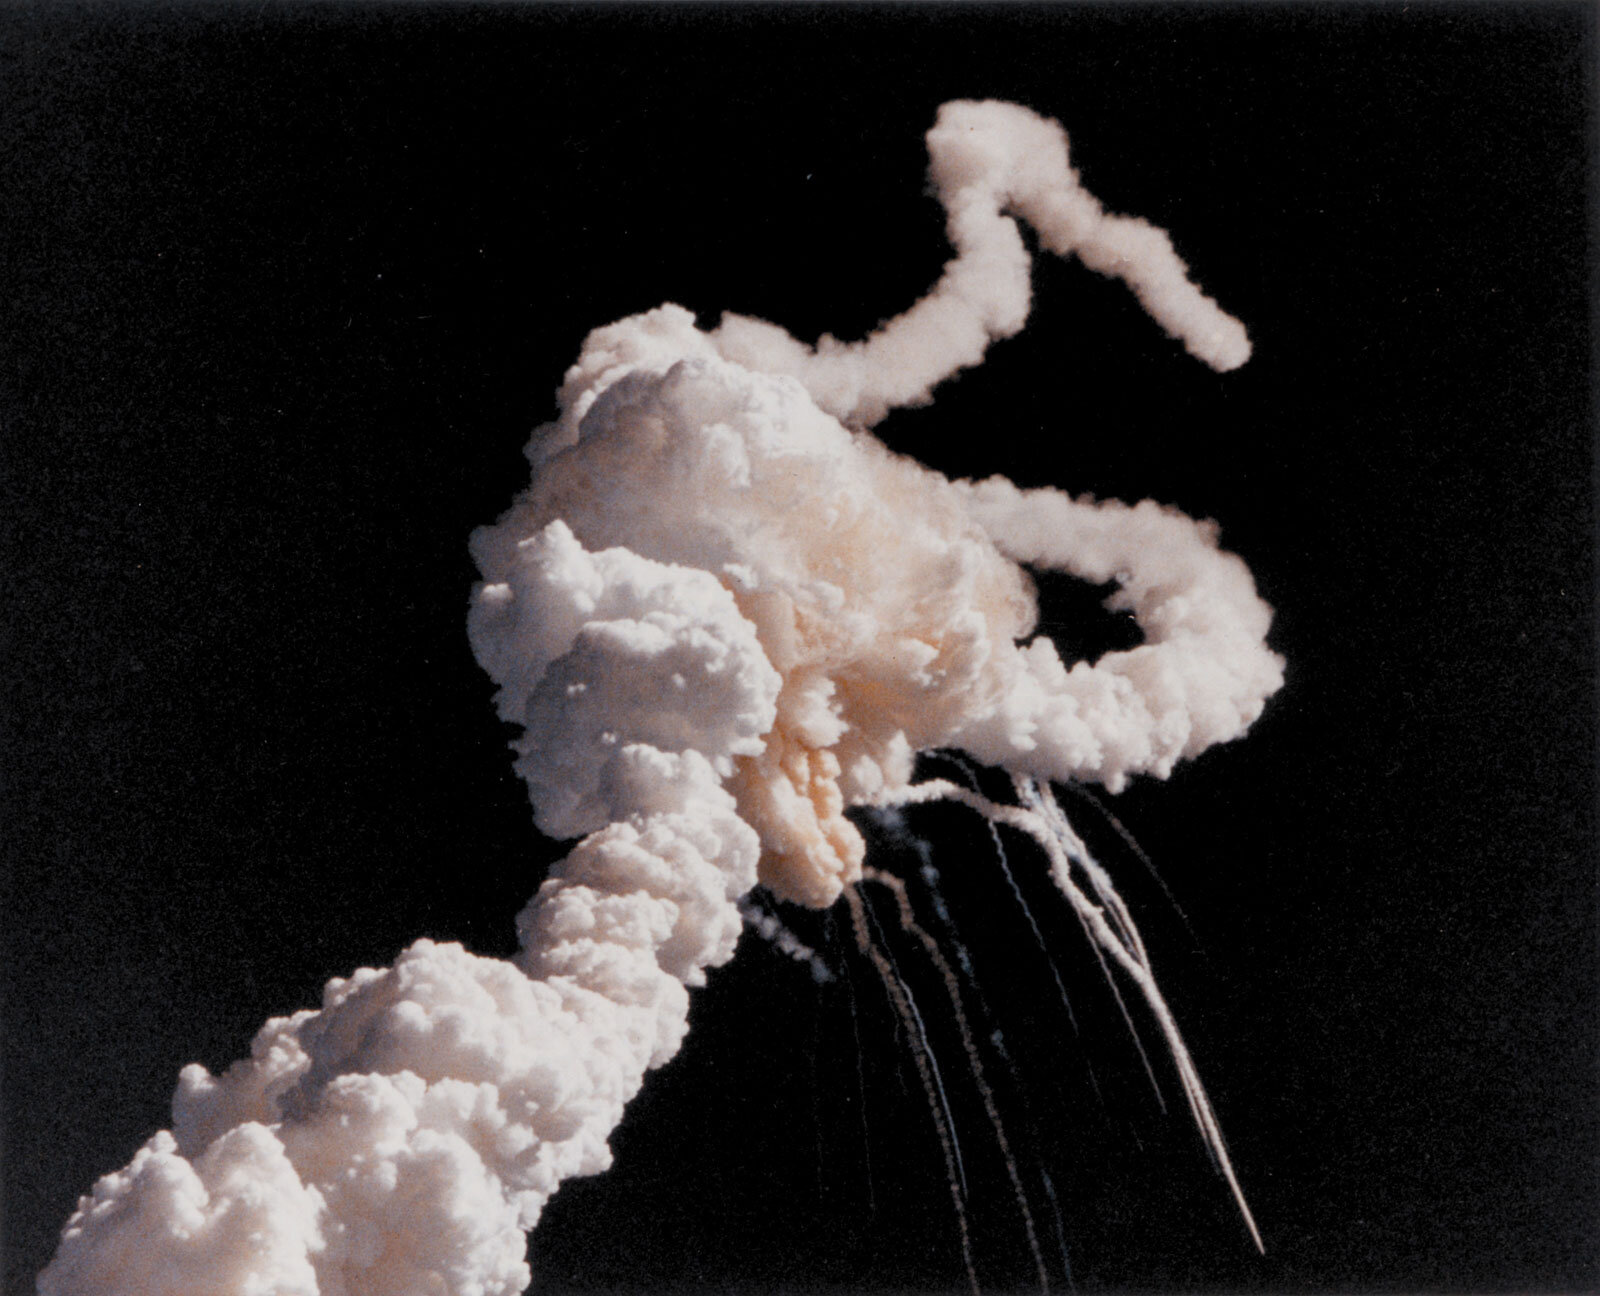 挑战者号-事故-破坏-发射-乘员-太空-教师-1986年1月28日.jpg